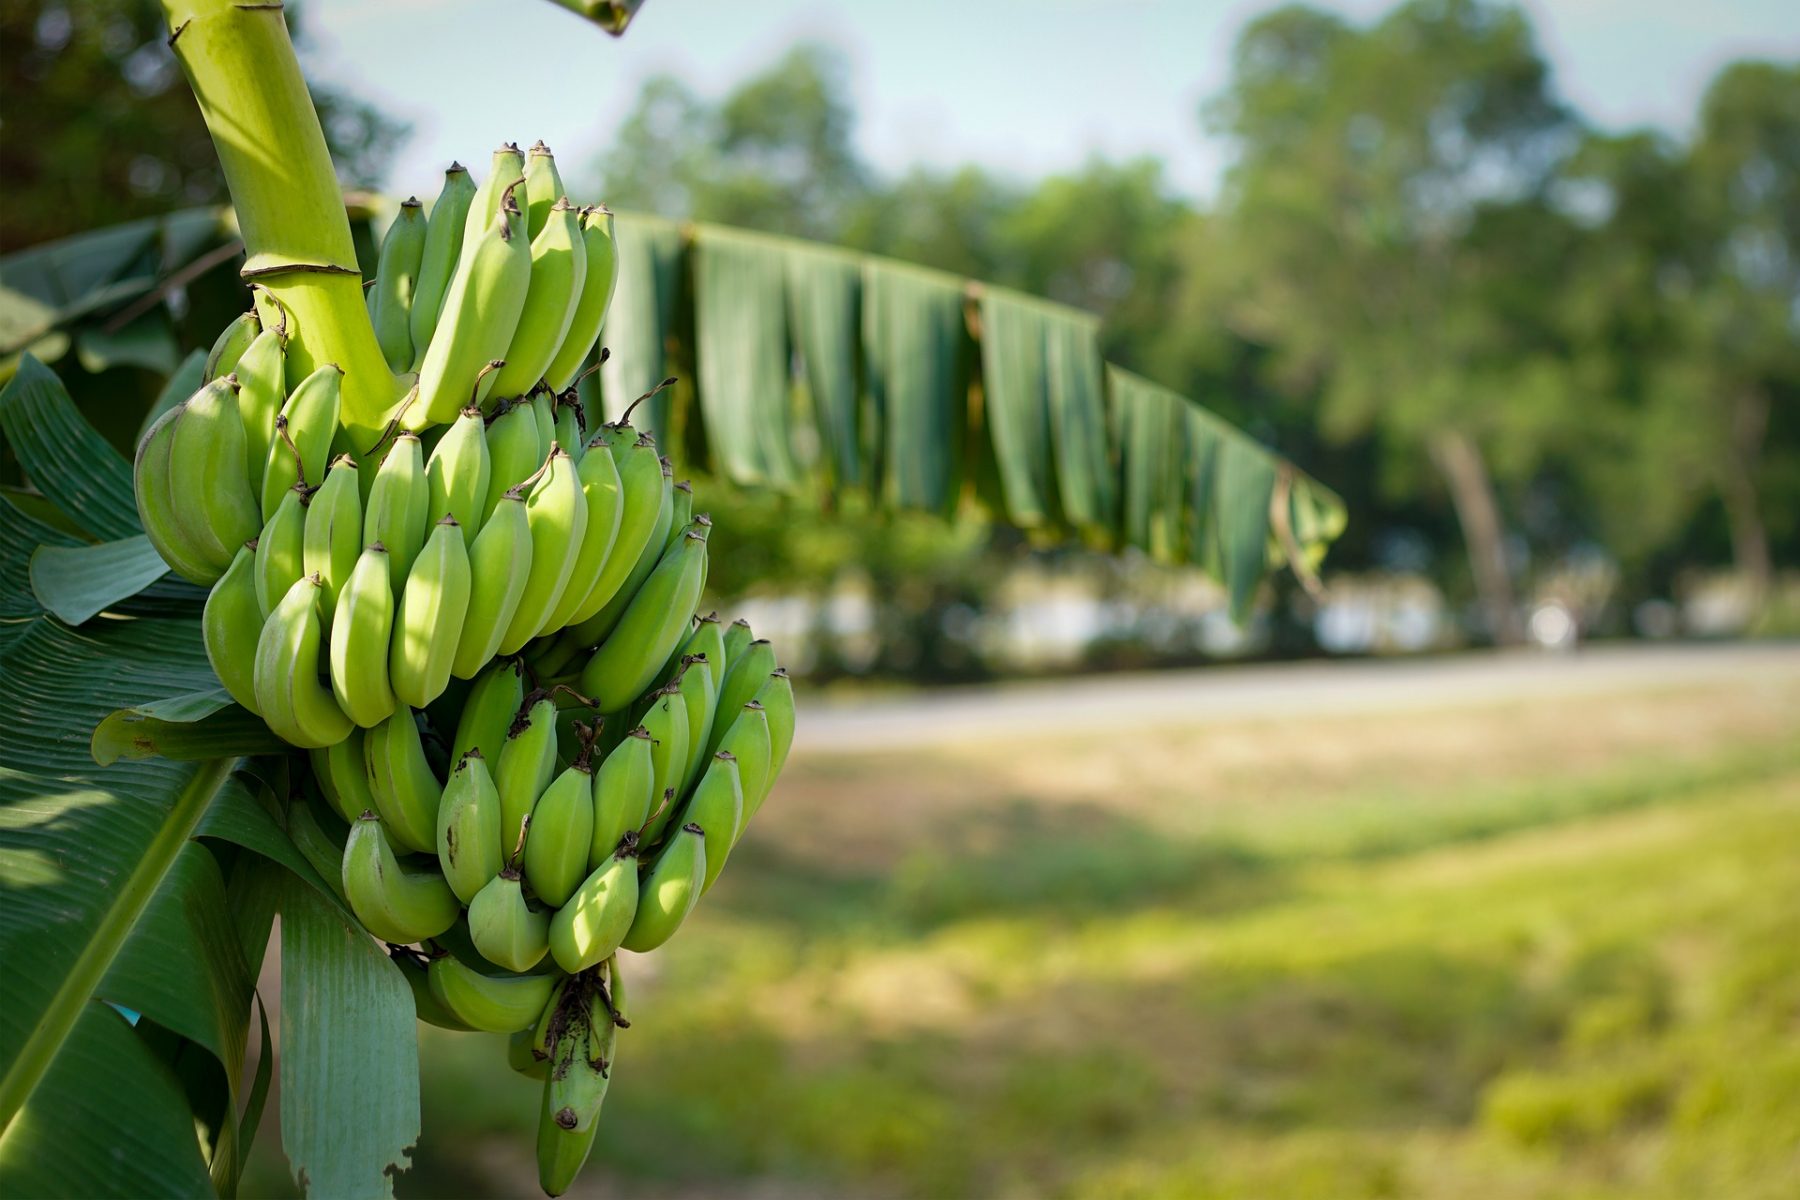 Πράσινες μπανάνες: Δοκιμάστε μια άγουρη μπανάνα “στην υγειά σας”